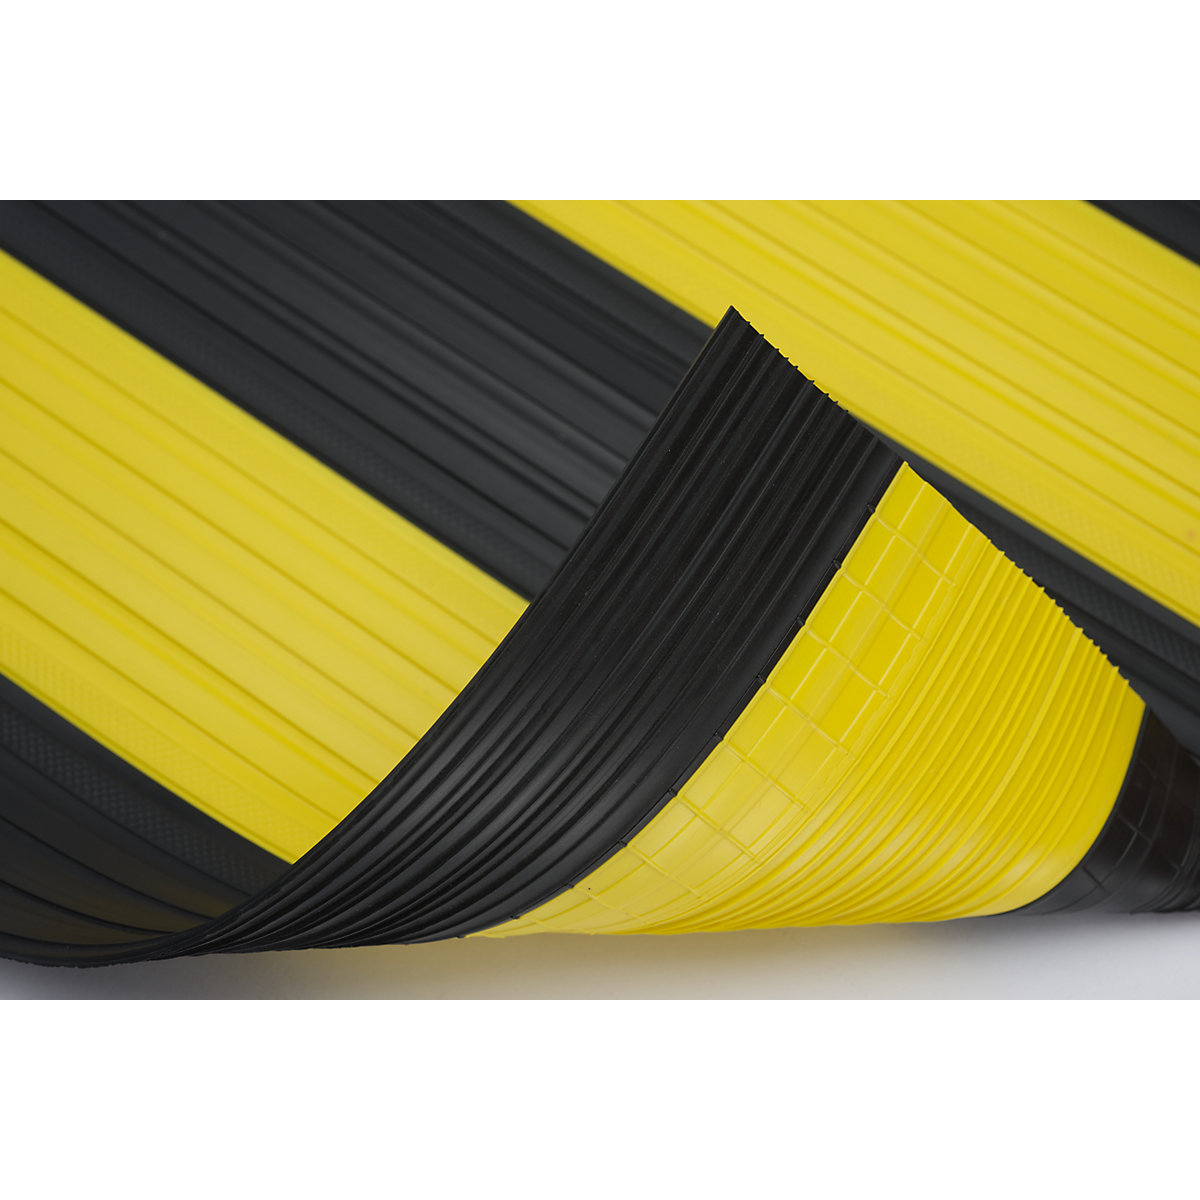 Passadeira em PVC macio, com superfície fechada, por metro corrente, preto/amarelo, largura 600 mm-4